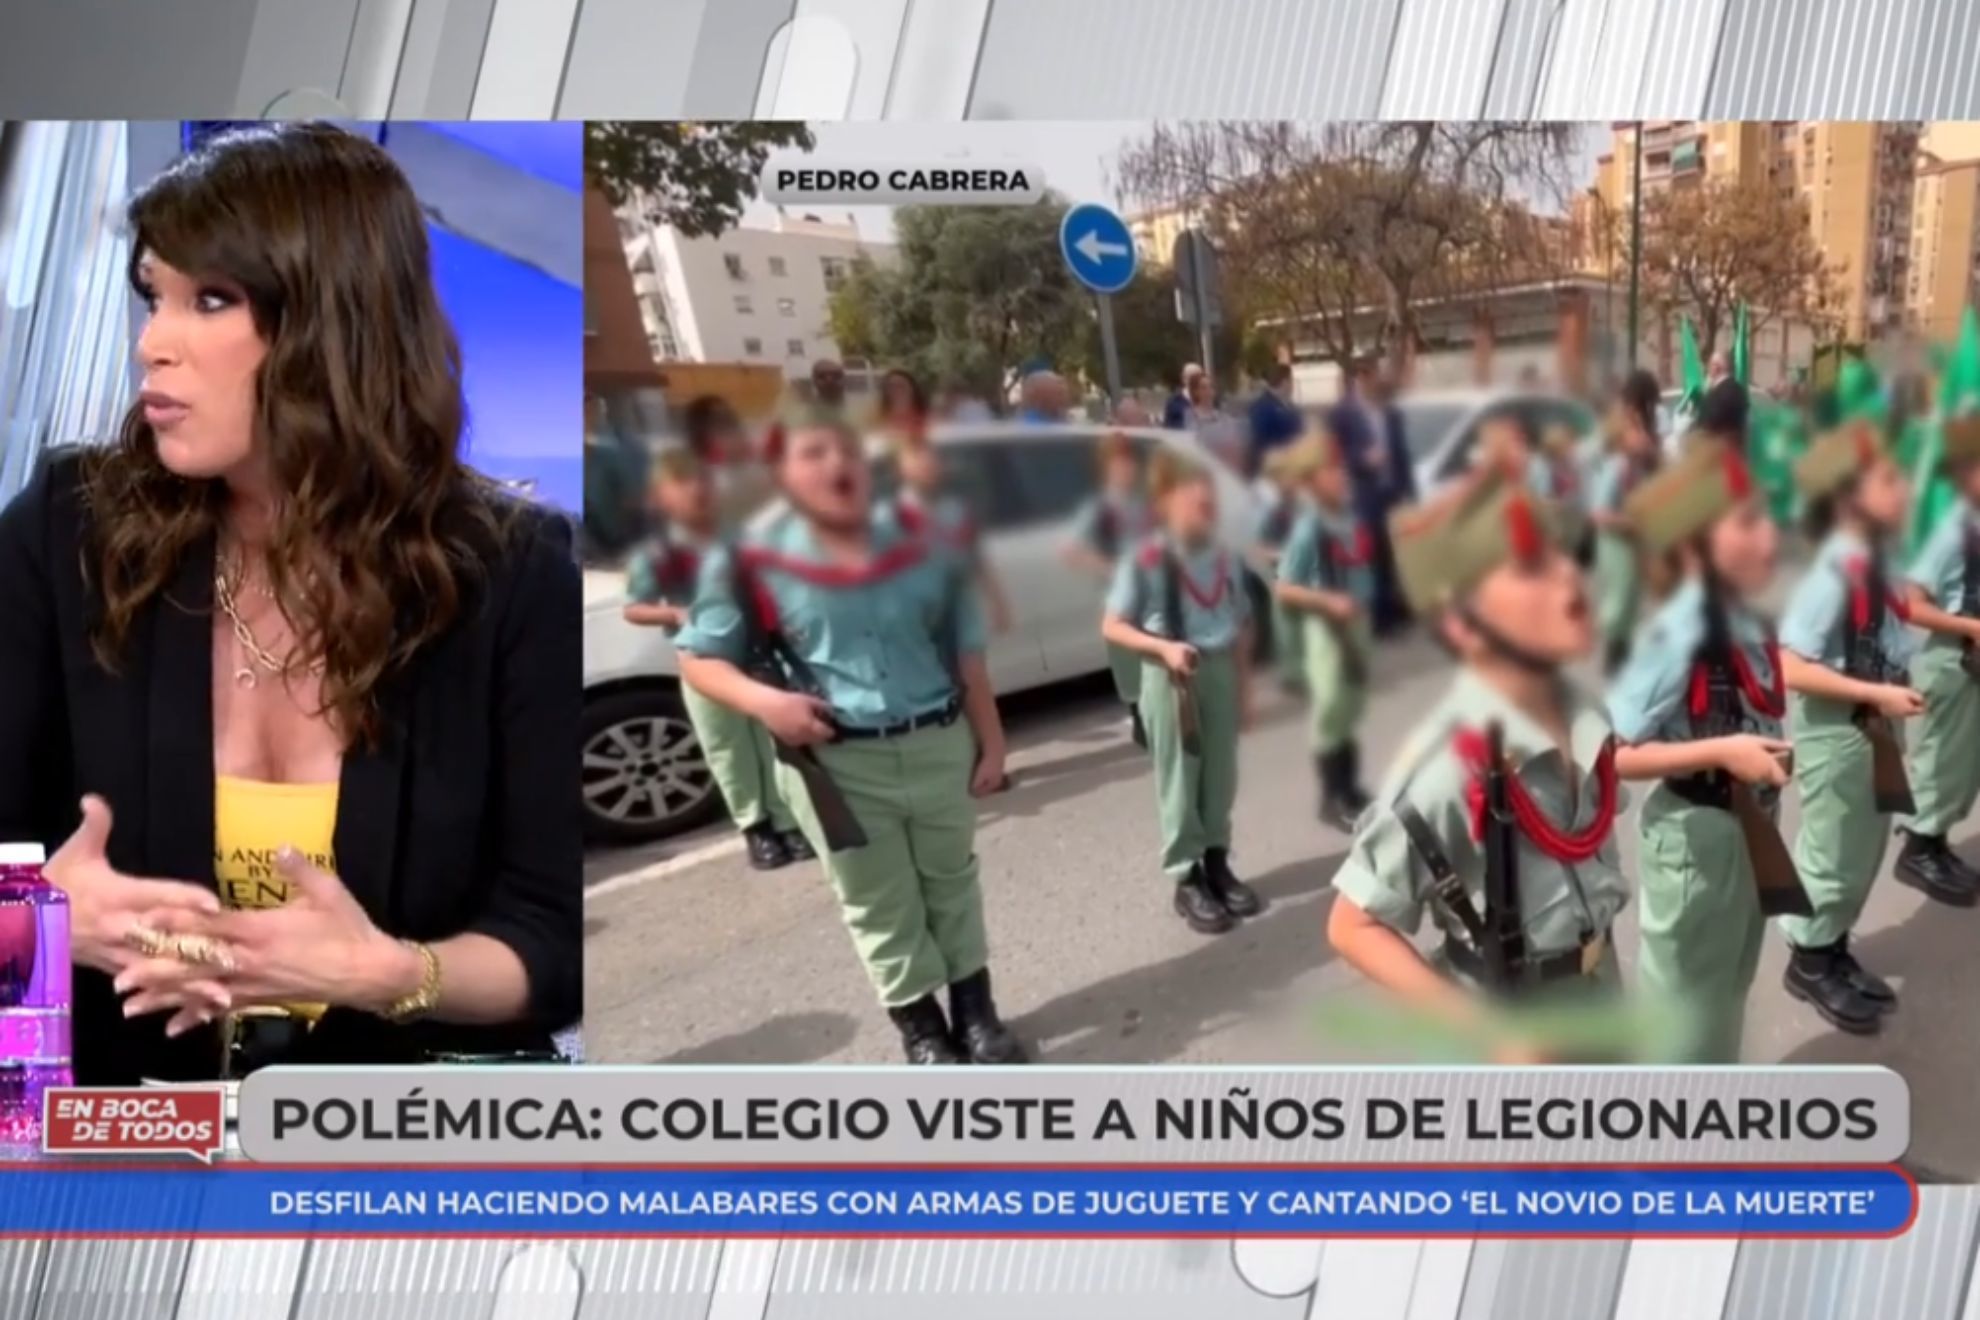 Sonia Ferrer horrorizada con un desfile de nios disfrazados de Legionarios: Quiero una educacin igualitaria, pacifista y democrtica